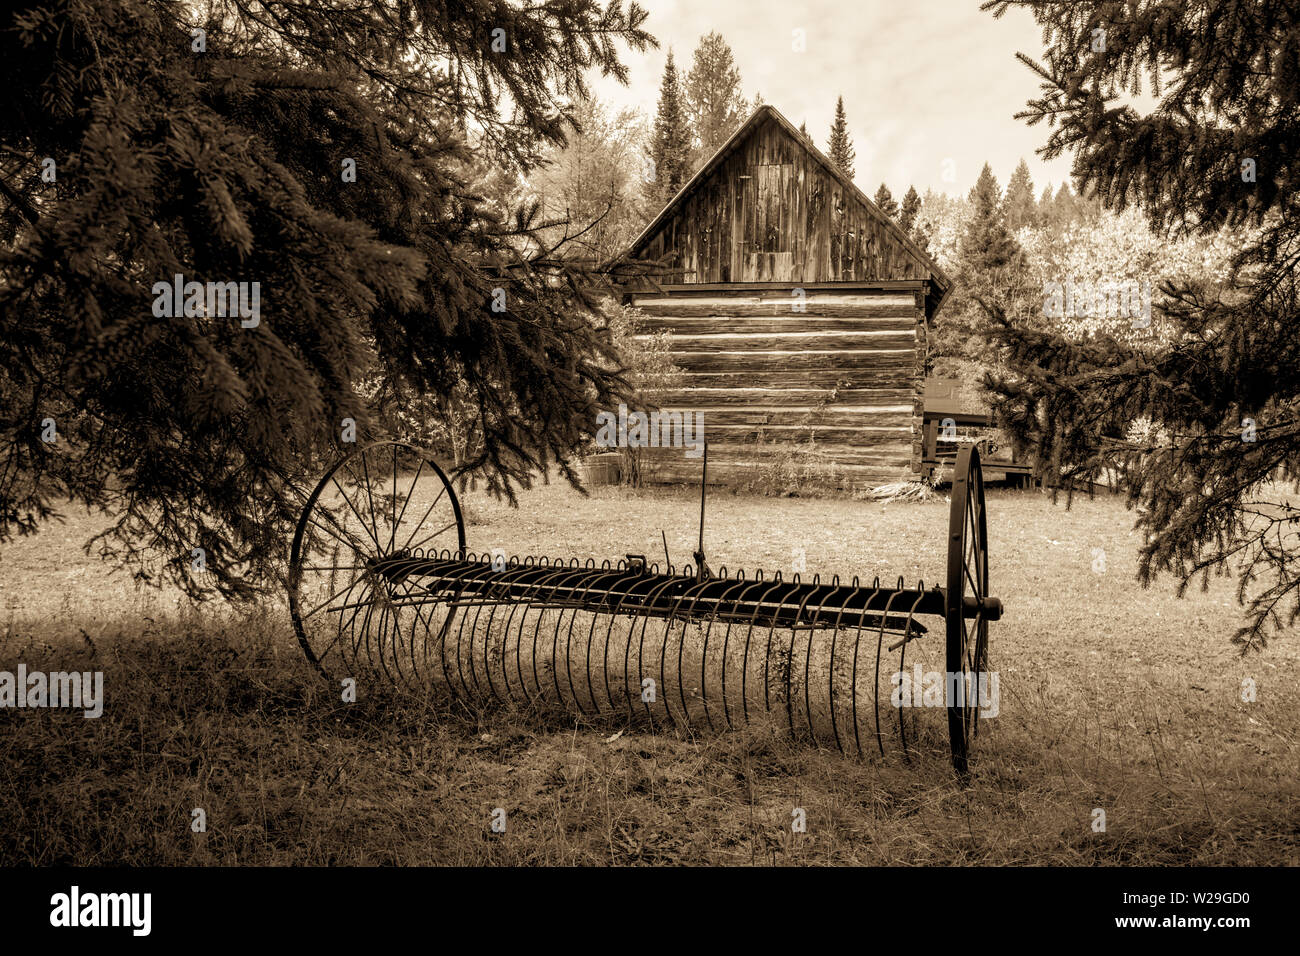 Pioneer Homestead. Antike verrostete Pflug und Außenwand eines traditionellen Hütte im amerikanischen Mittelwesten anmelden Stockfoto